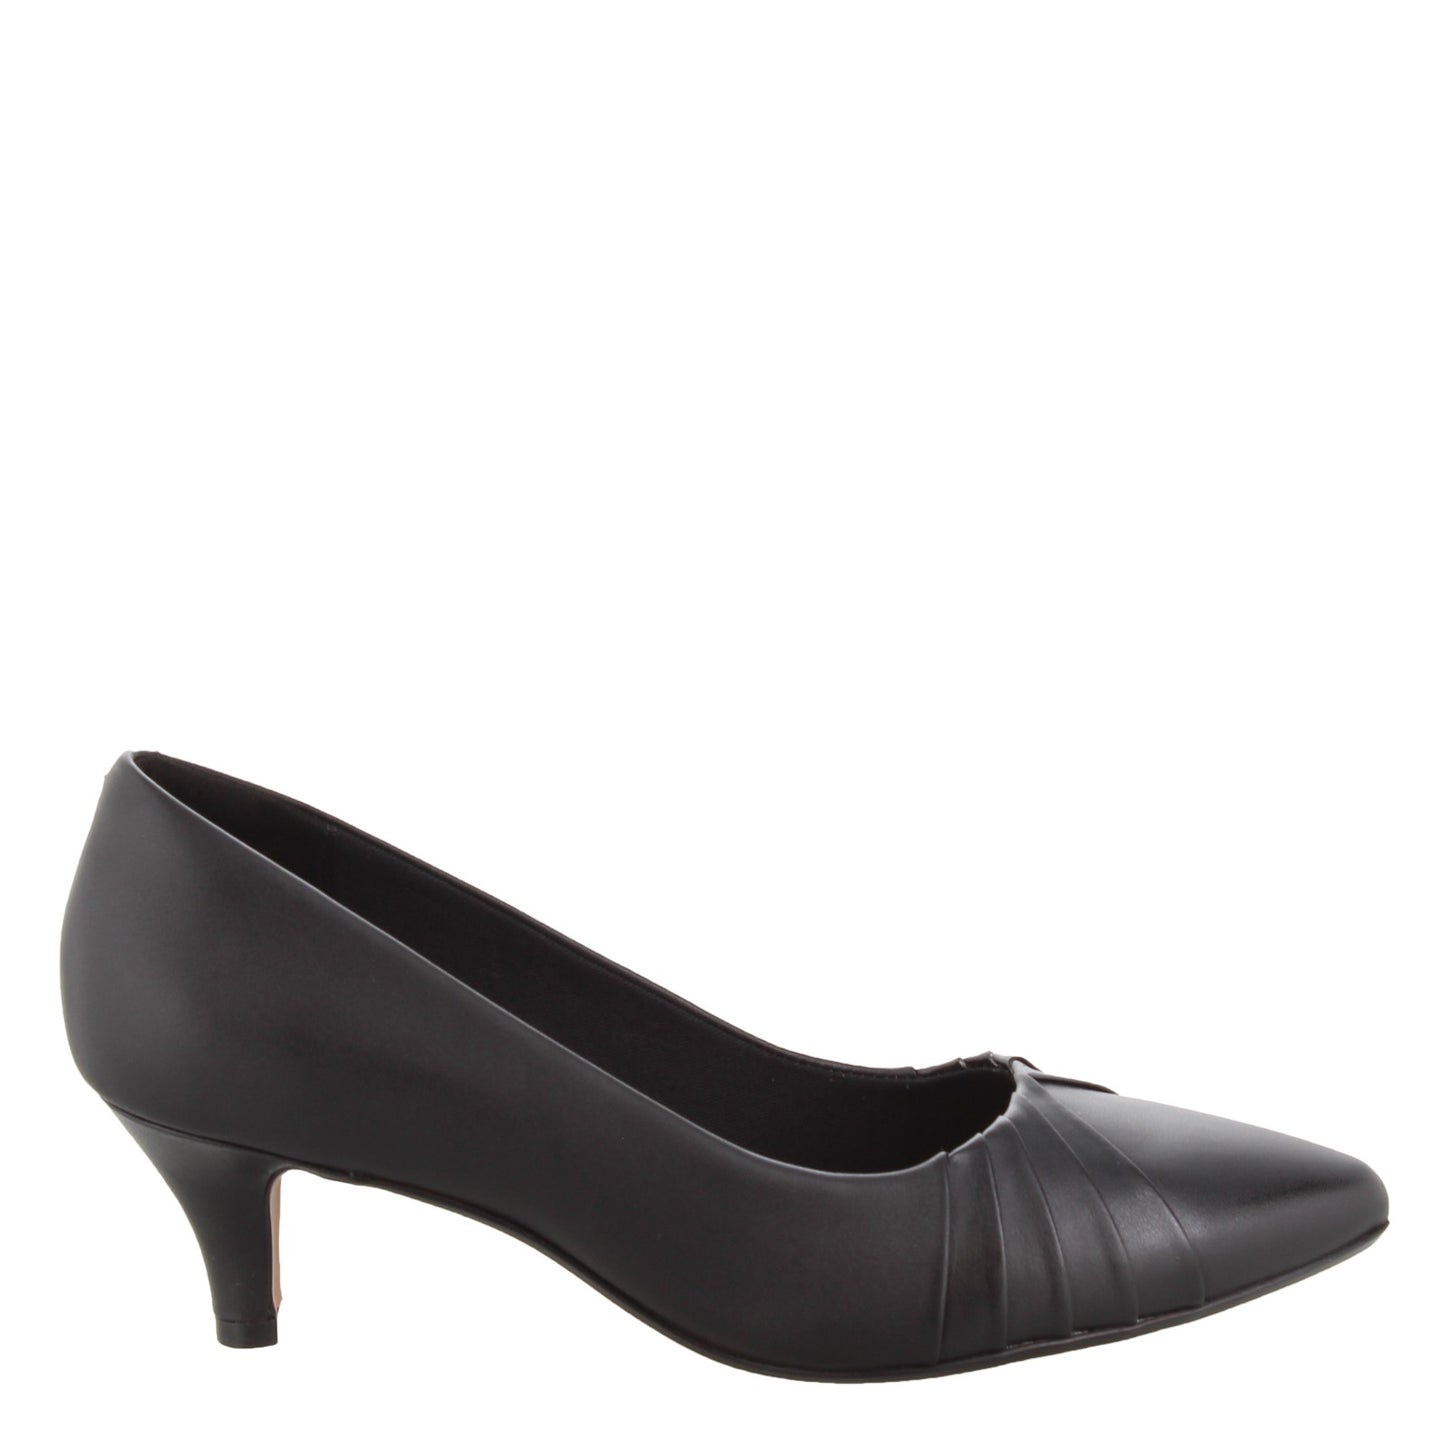 Peltz Shoes  Women's Clarks Linvale Crown Pumps BLACK 26143989